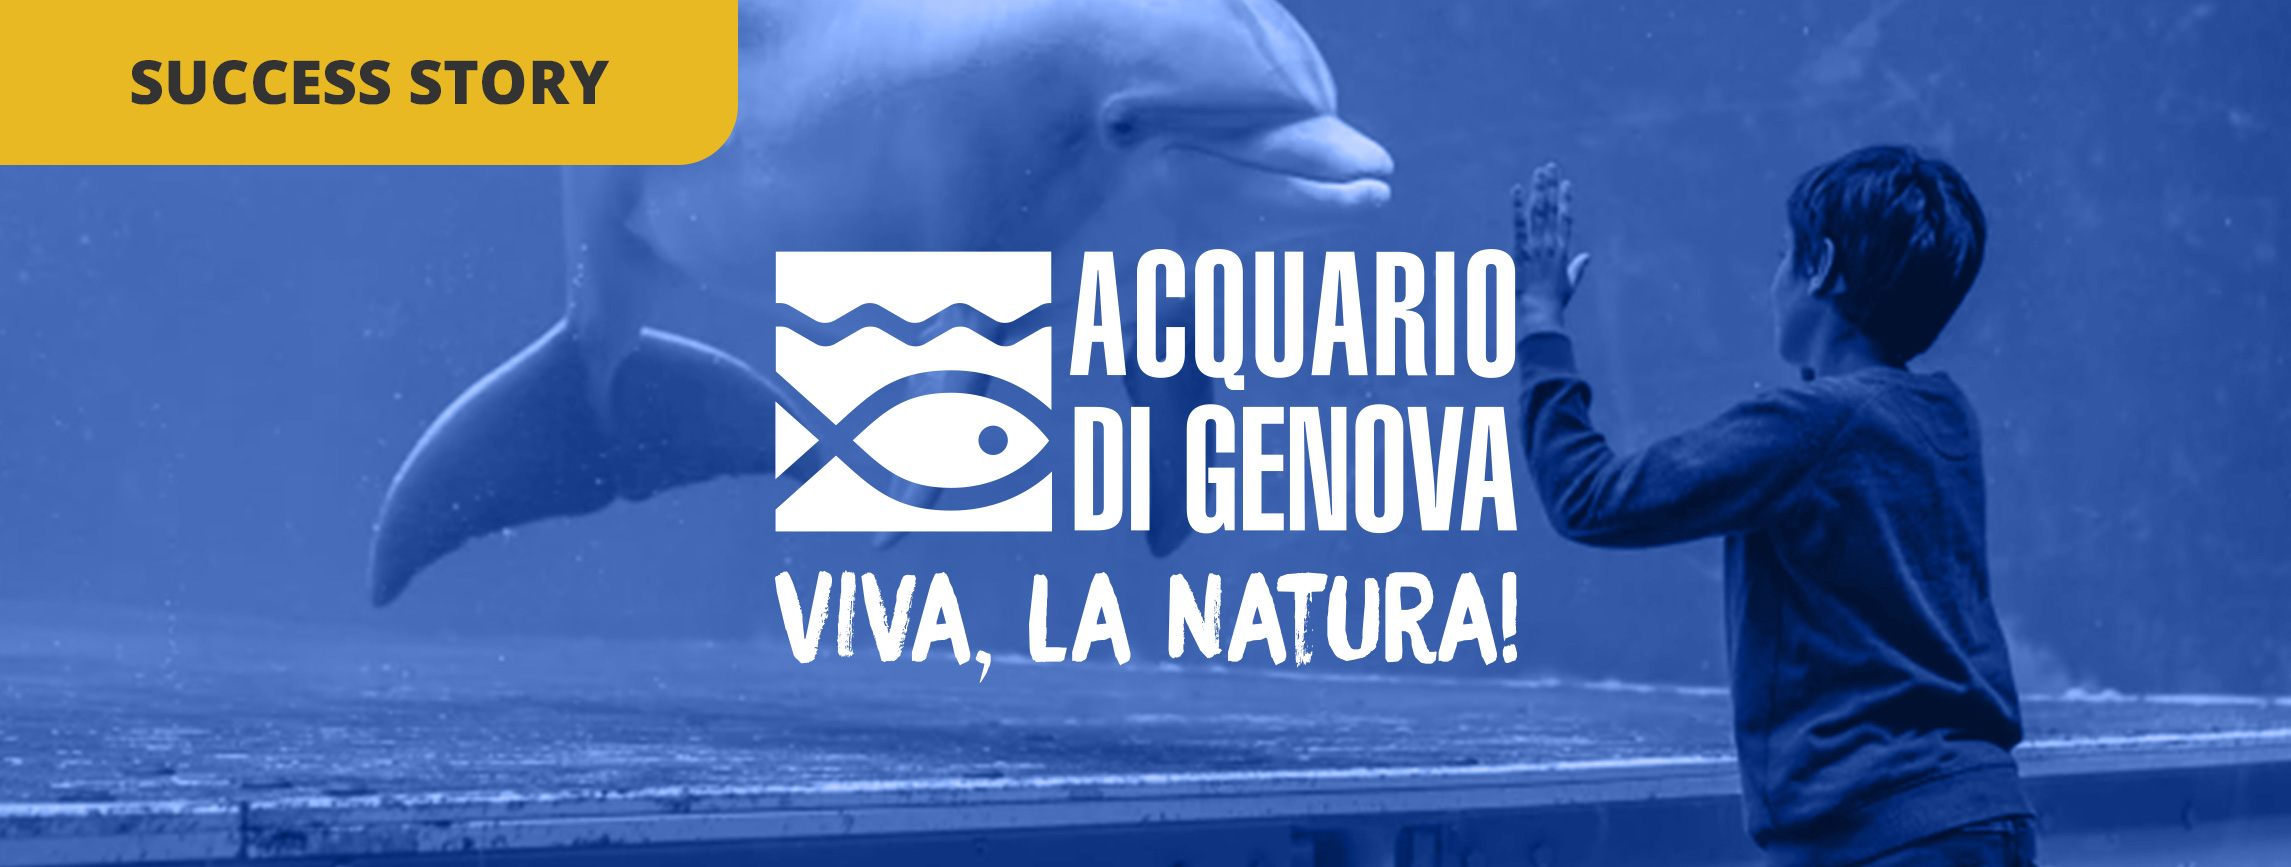 Comment l'Acquario di Genova est devenu l'un des 10 meilleurs aquariums du monde sur TripAdvisor